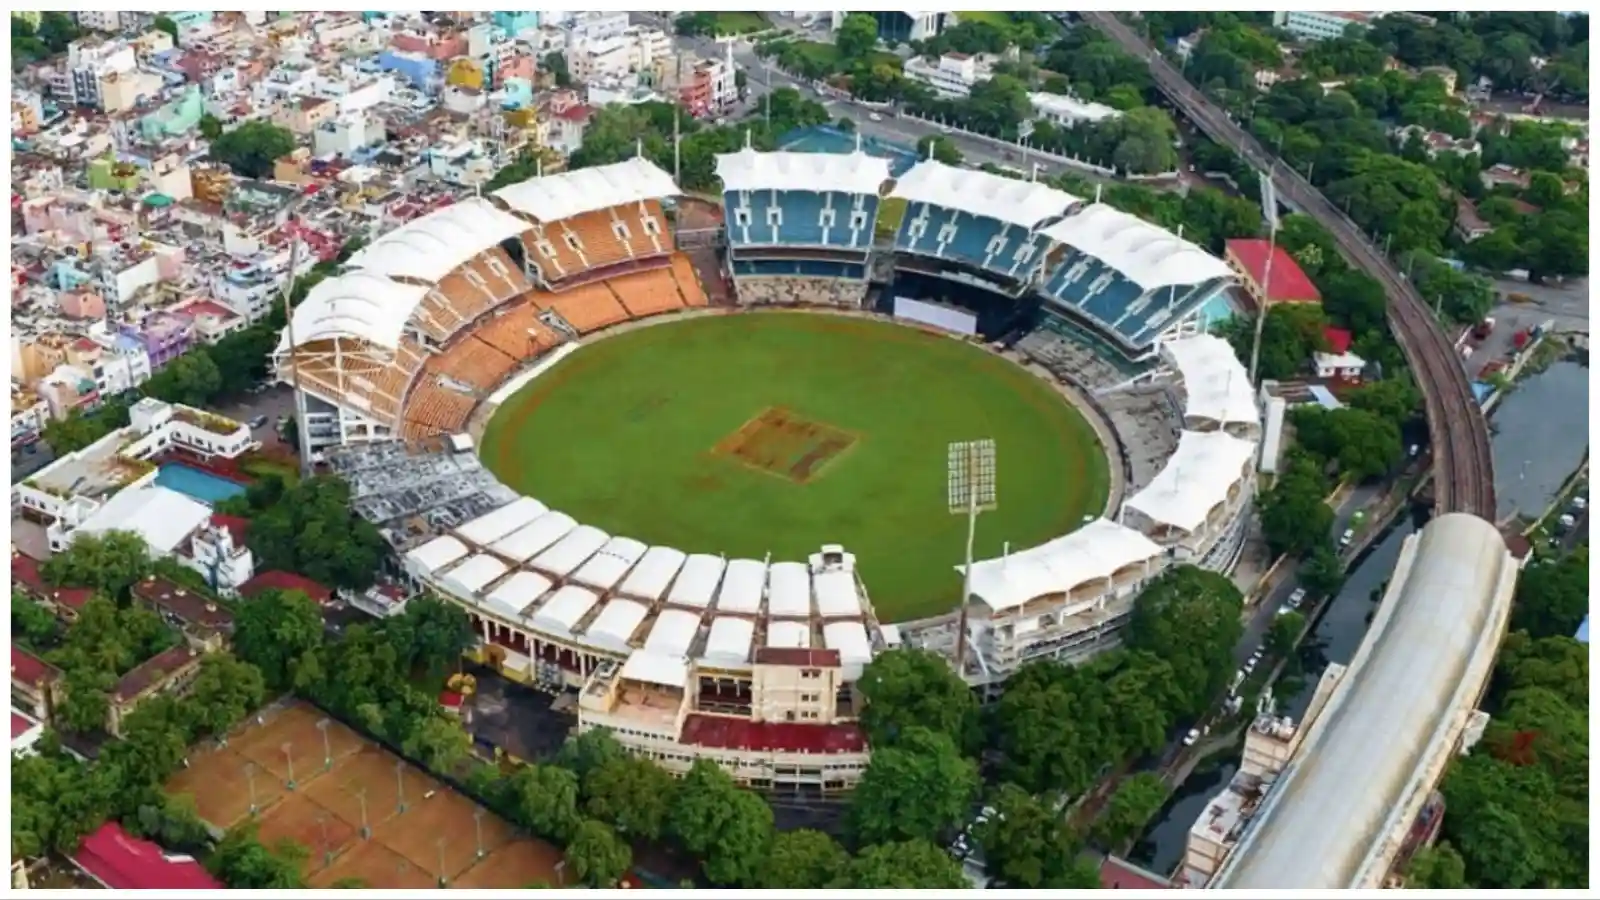 MA Chidambaram (Chepauk) Stadium, Chennai Boundary Length, Seating